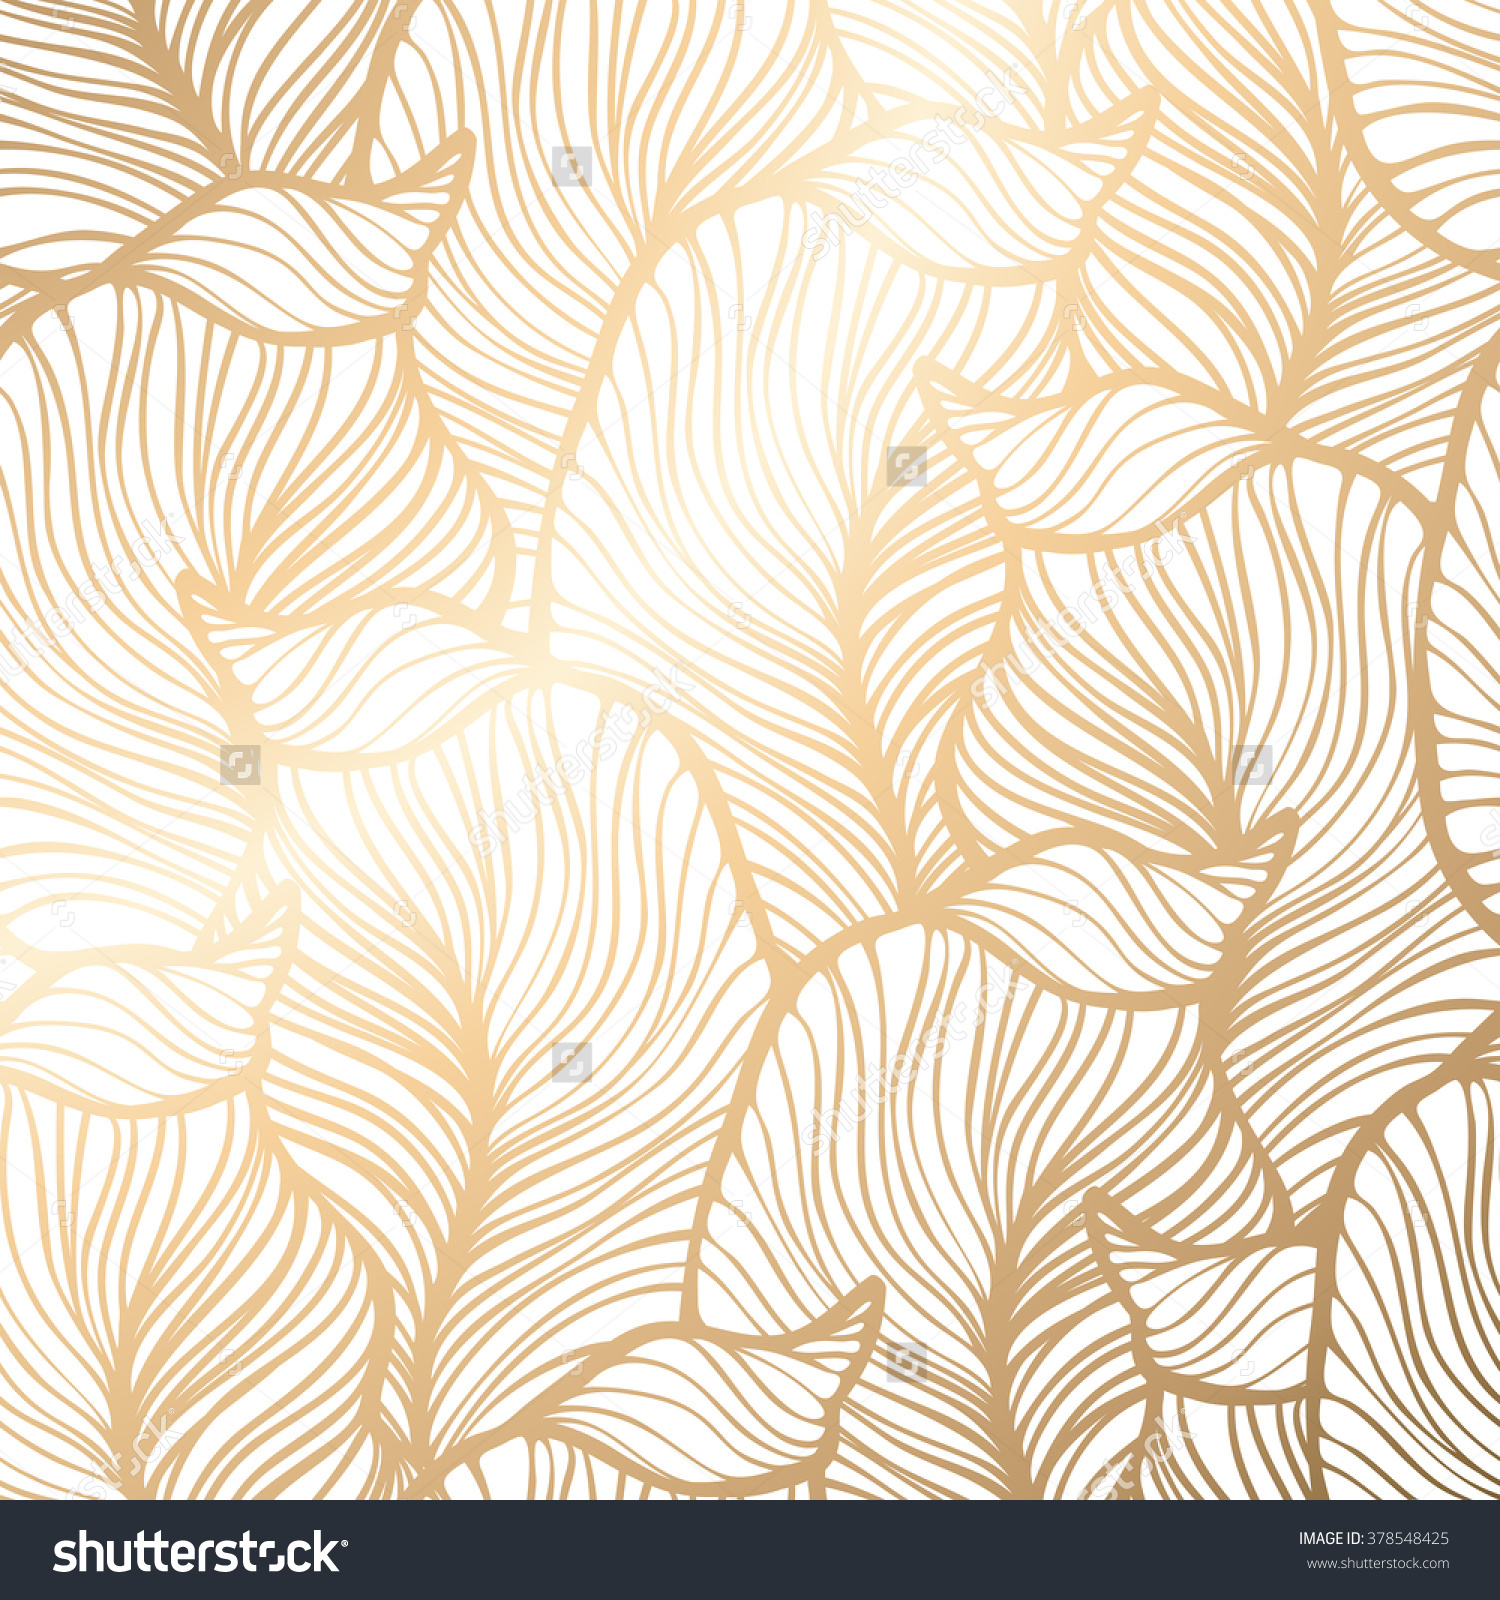 금박 벽지,무늬,선,벽지,잎,디자인